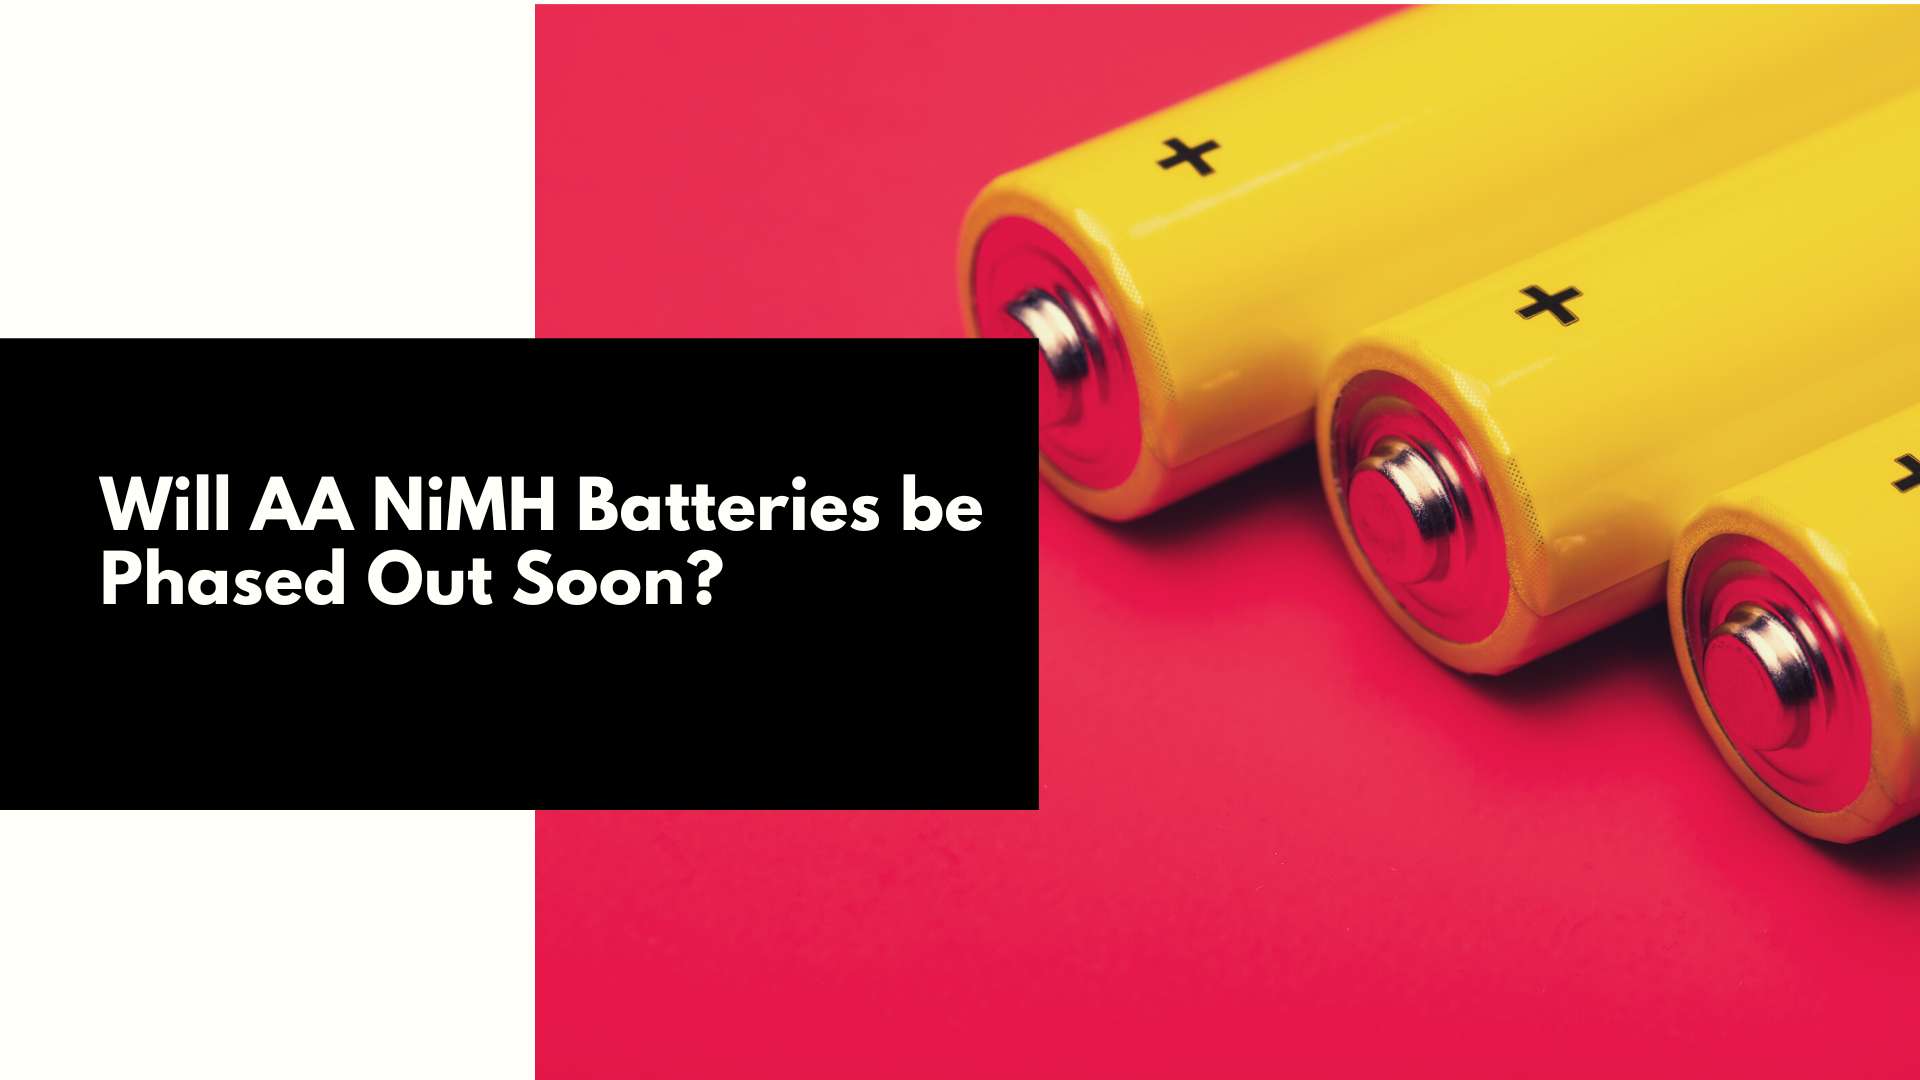 Zullen AA NiMH-batterijen binnenkort uitgefaseerd zijn?